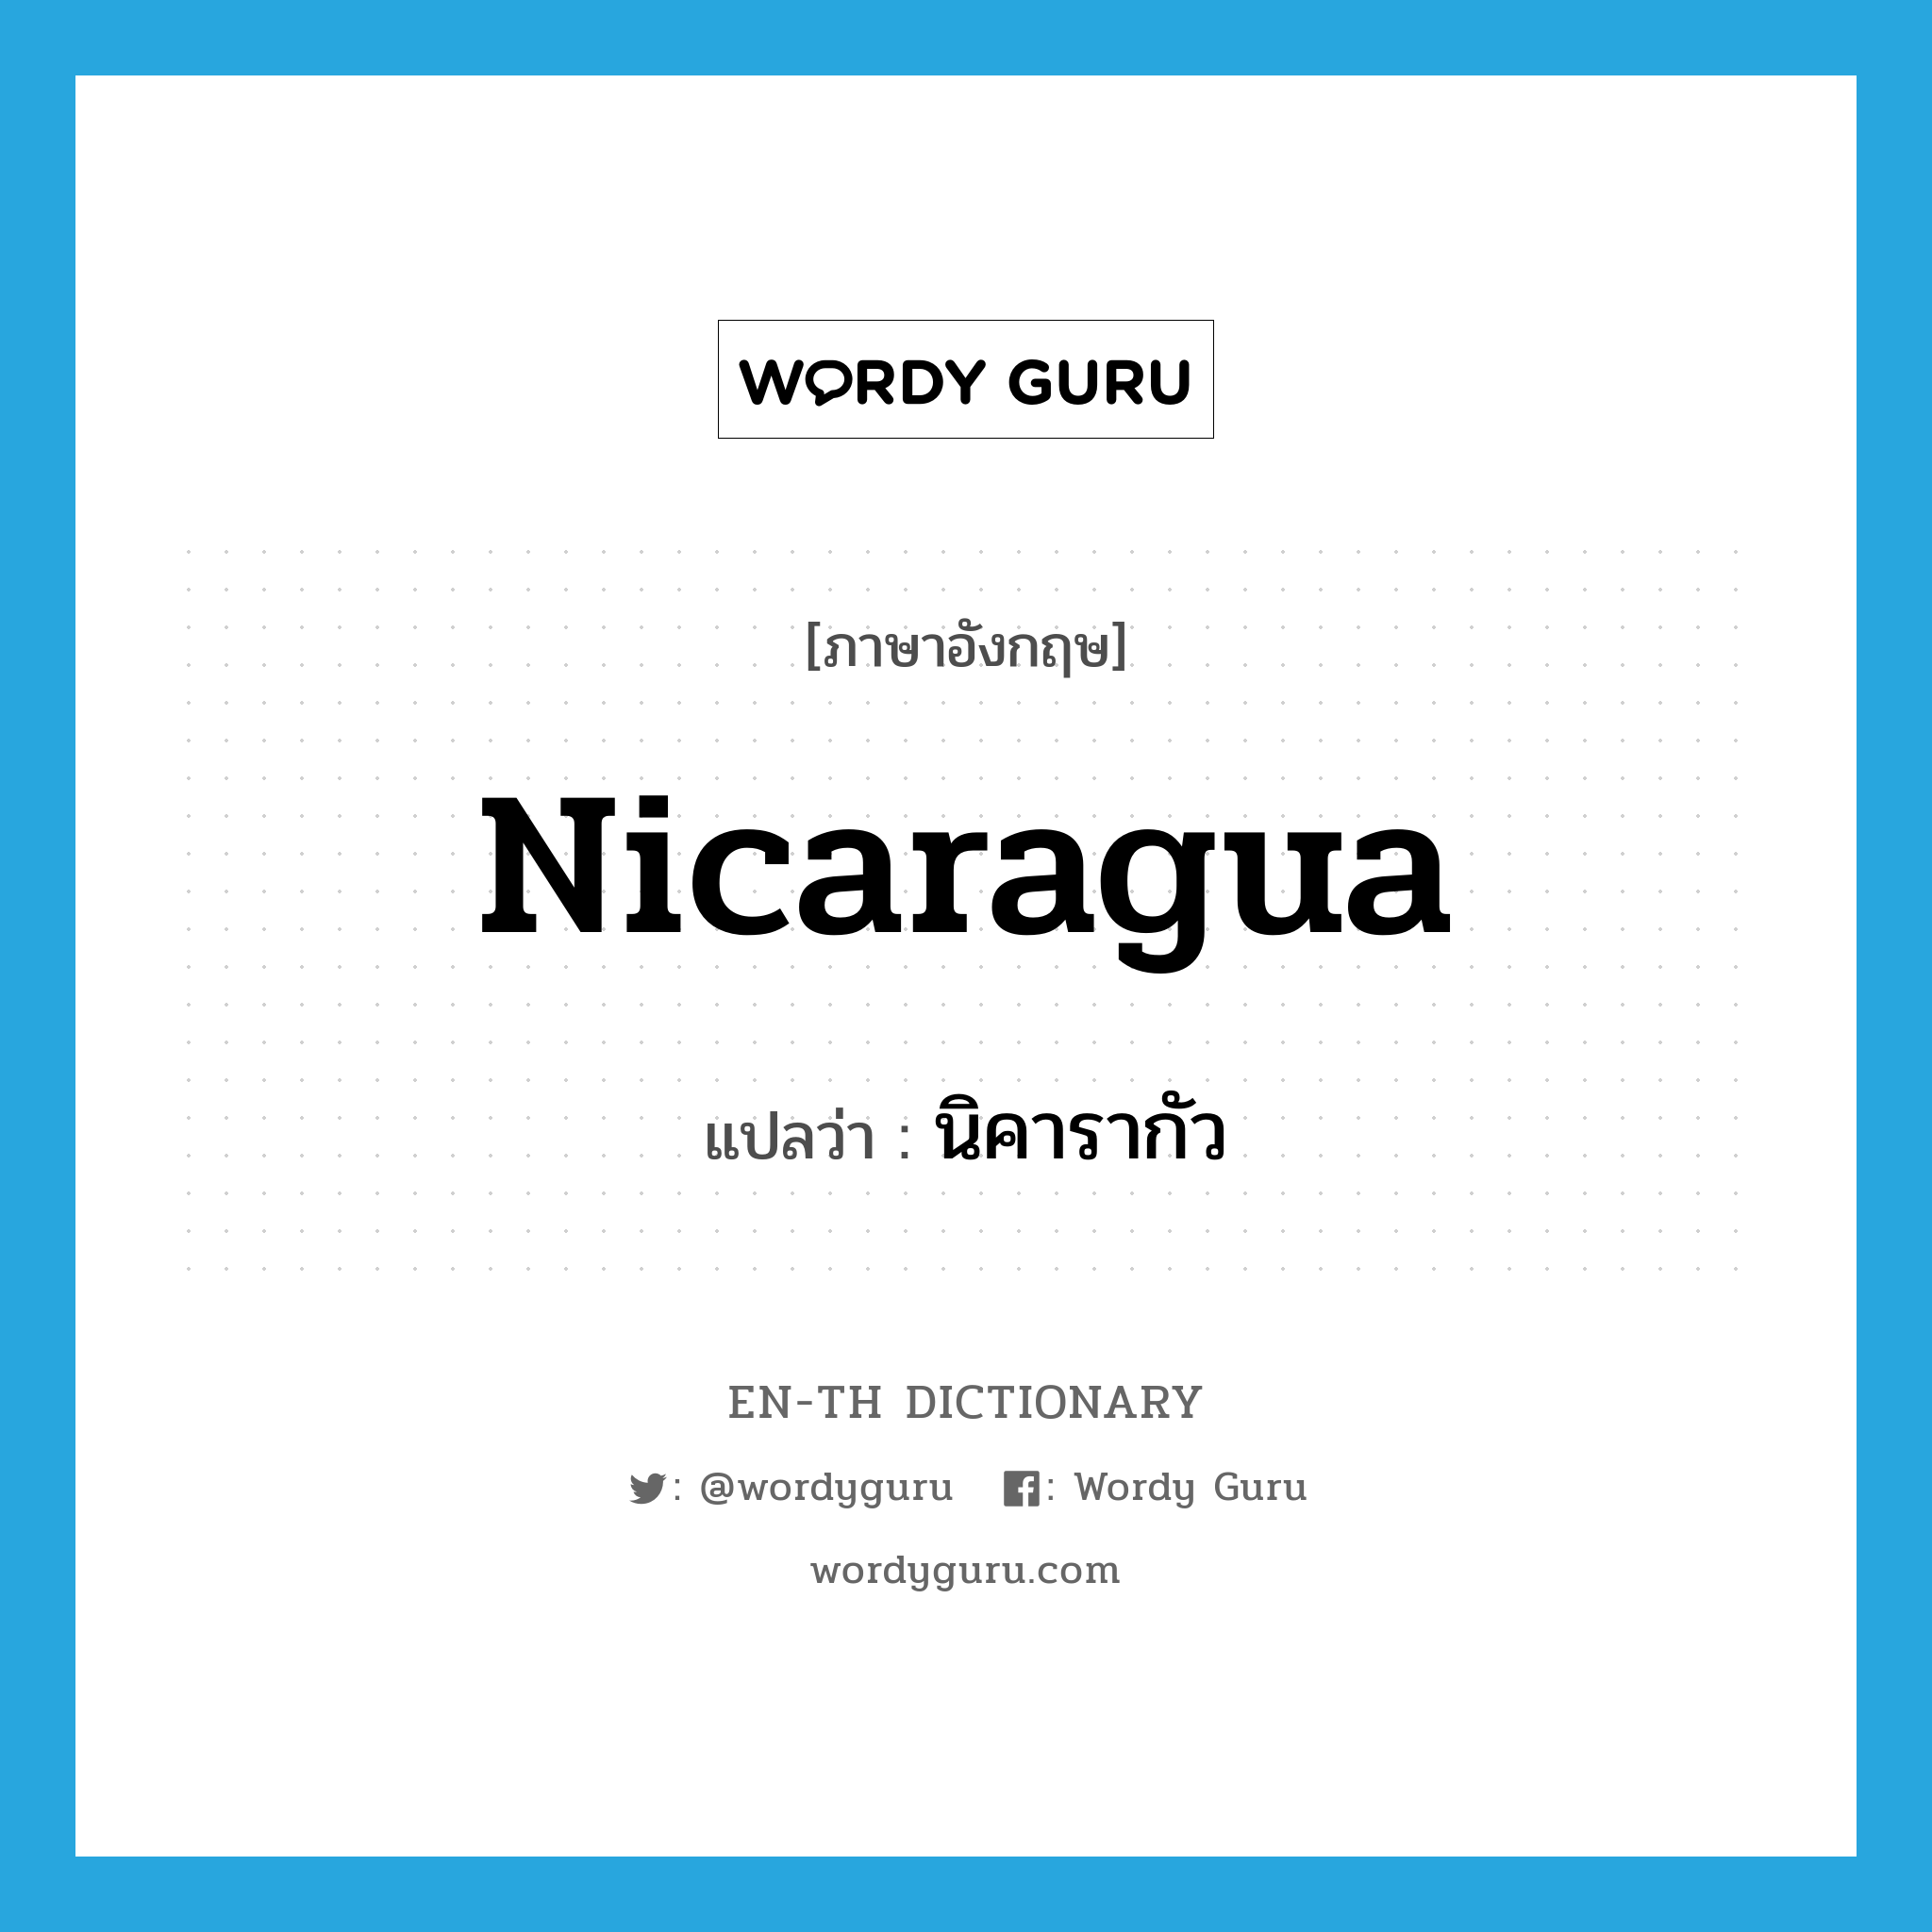 นิคารากัว ภาษาอังกฤษ?, คำศัพท์ภาษาอังกฤษ นิคารากัว แปลว่า Nicaragua ประเภท N หมวด N